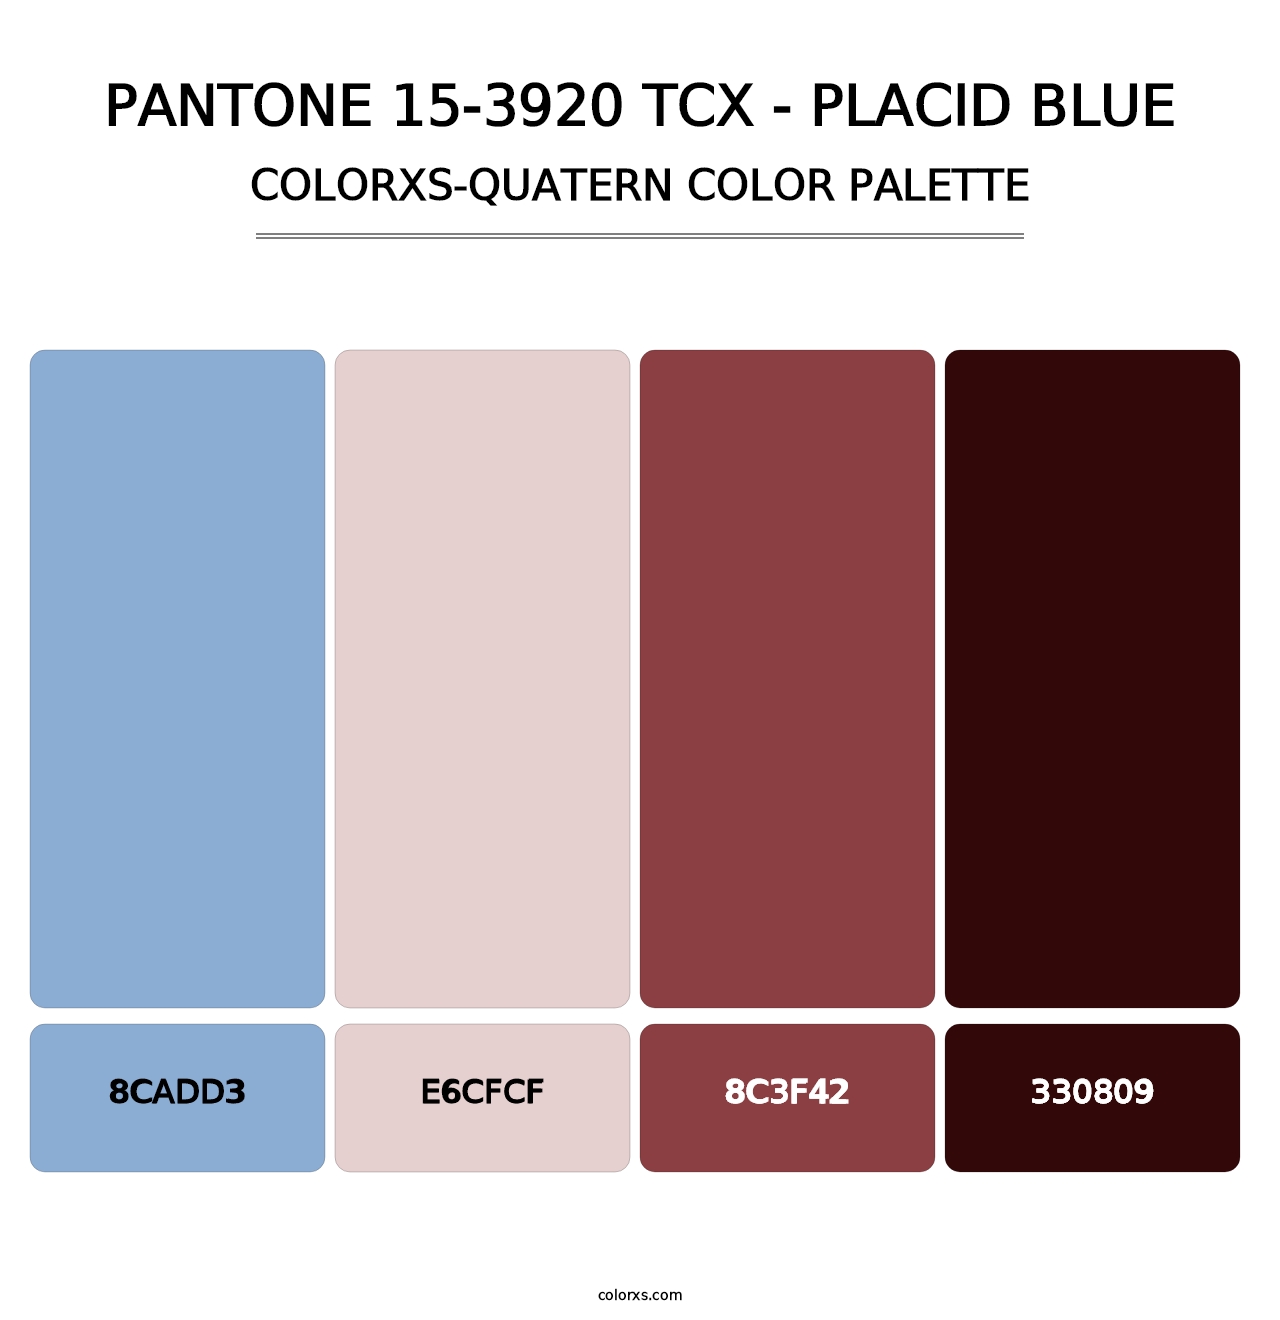 PANTONE 15-3920 TCX - Placid Blue - Colorxs Quatern Palette